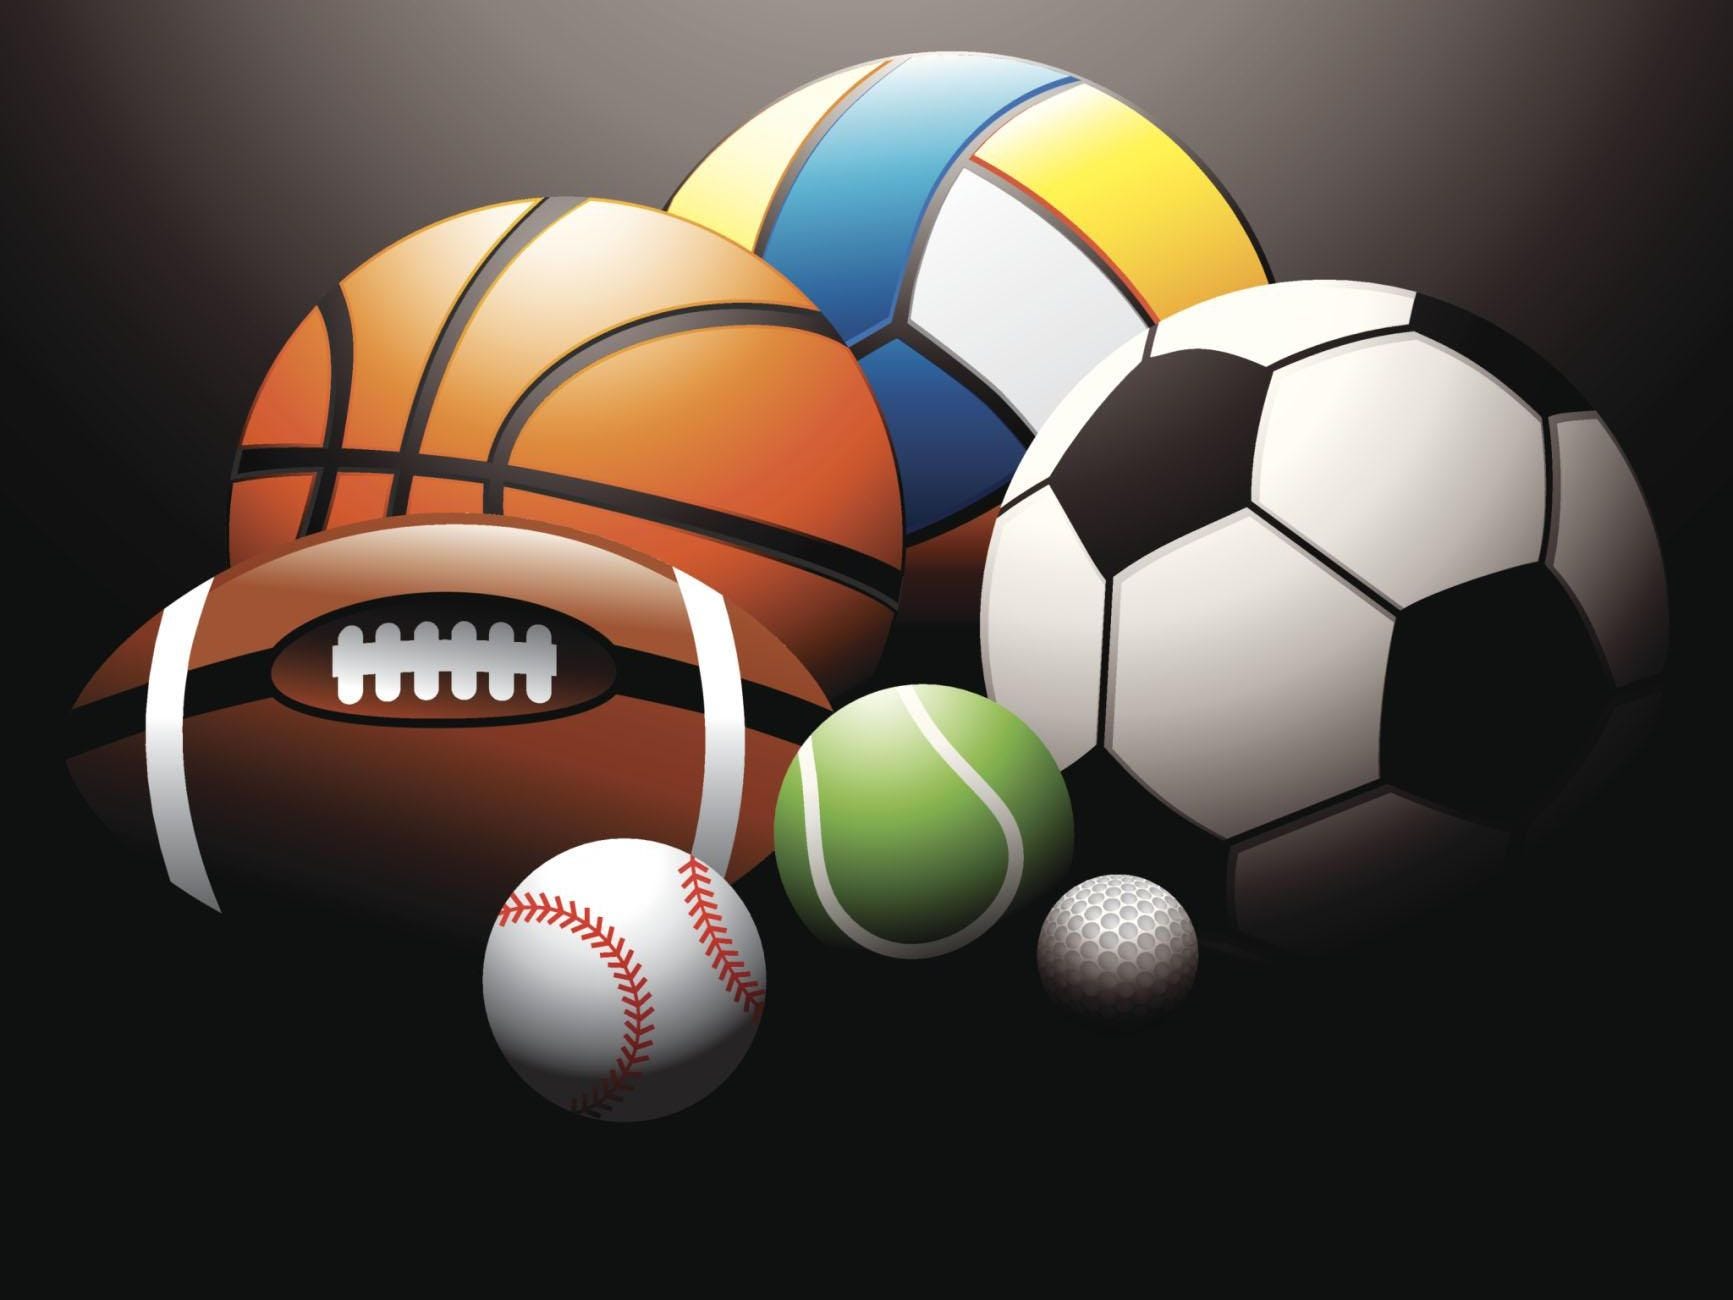 sports themed wallpaper,soccer ball,ball,football,sports equipment,ball